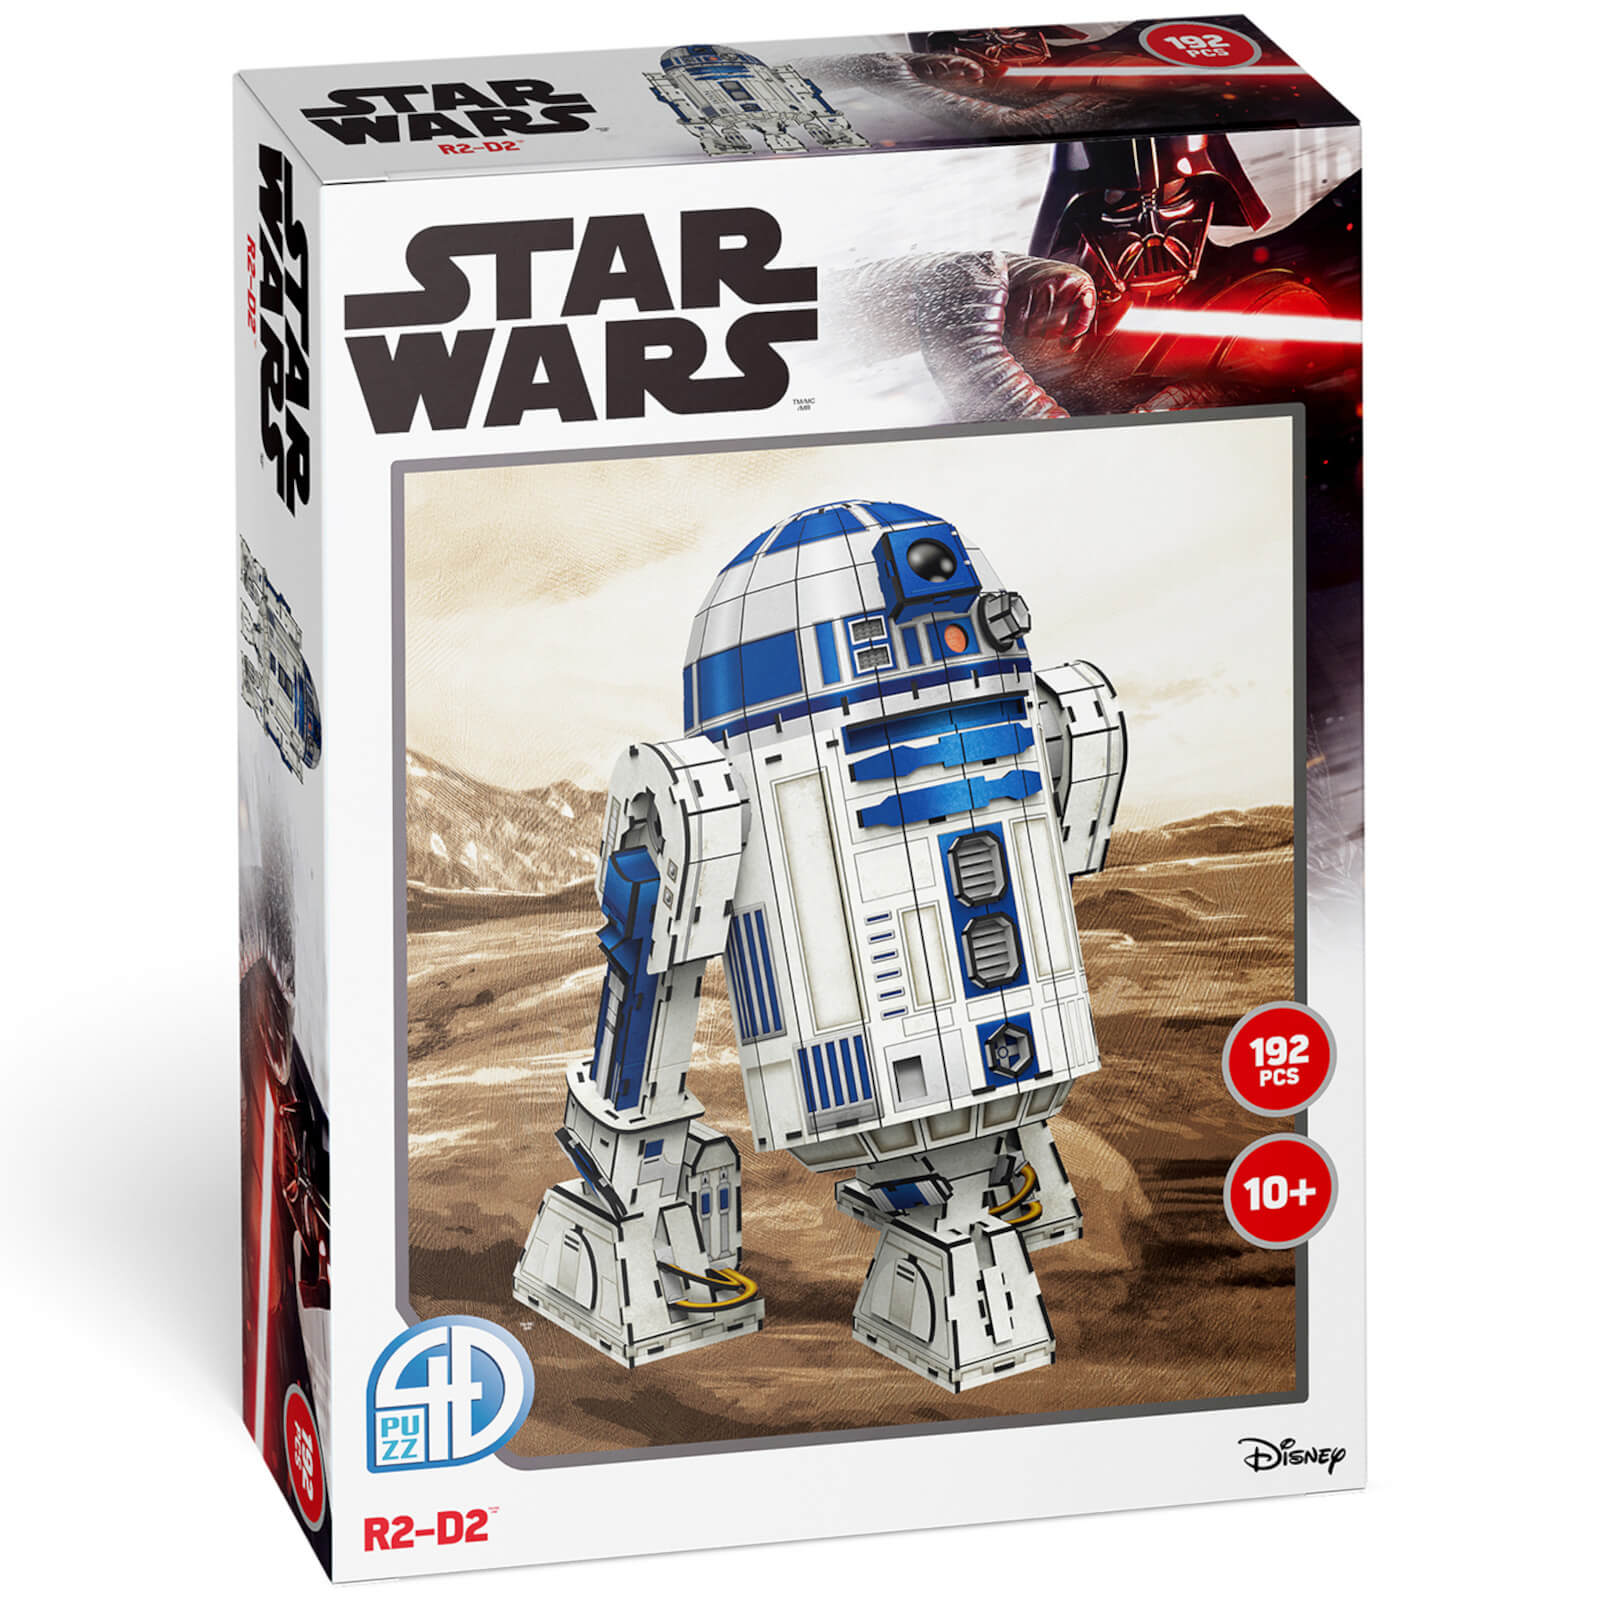 Photos - Other Souvenirs Star Wars R2-D2 Paper Core 3D Puzzle Model U08563